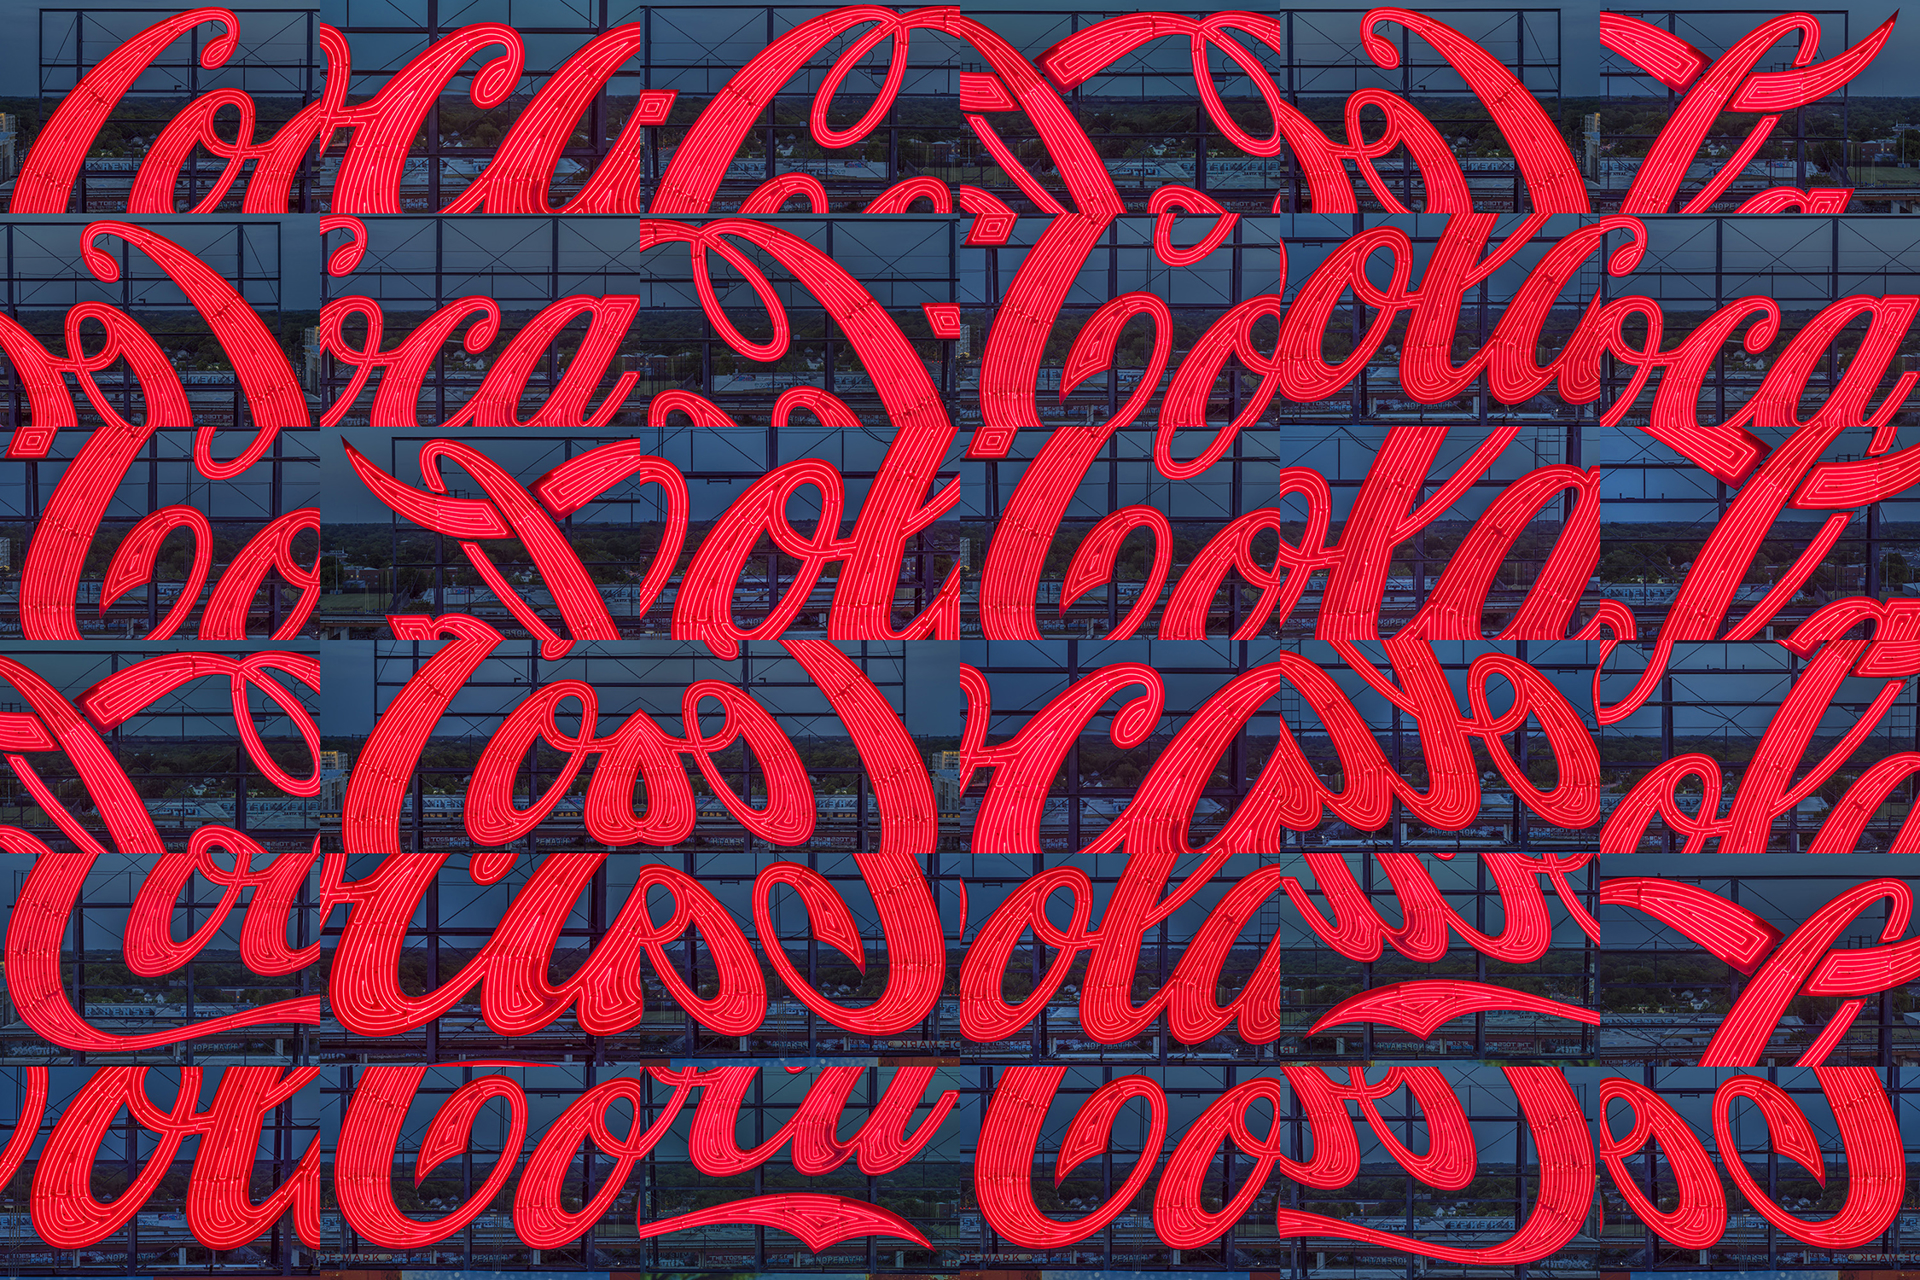 Coca-Cola Sign, Atlanta, GA X 36 by Peter Essick